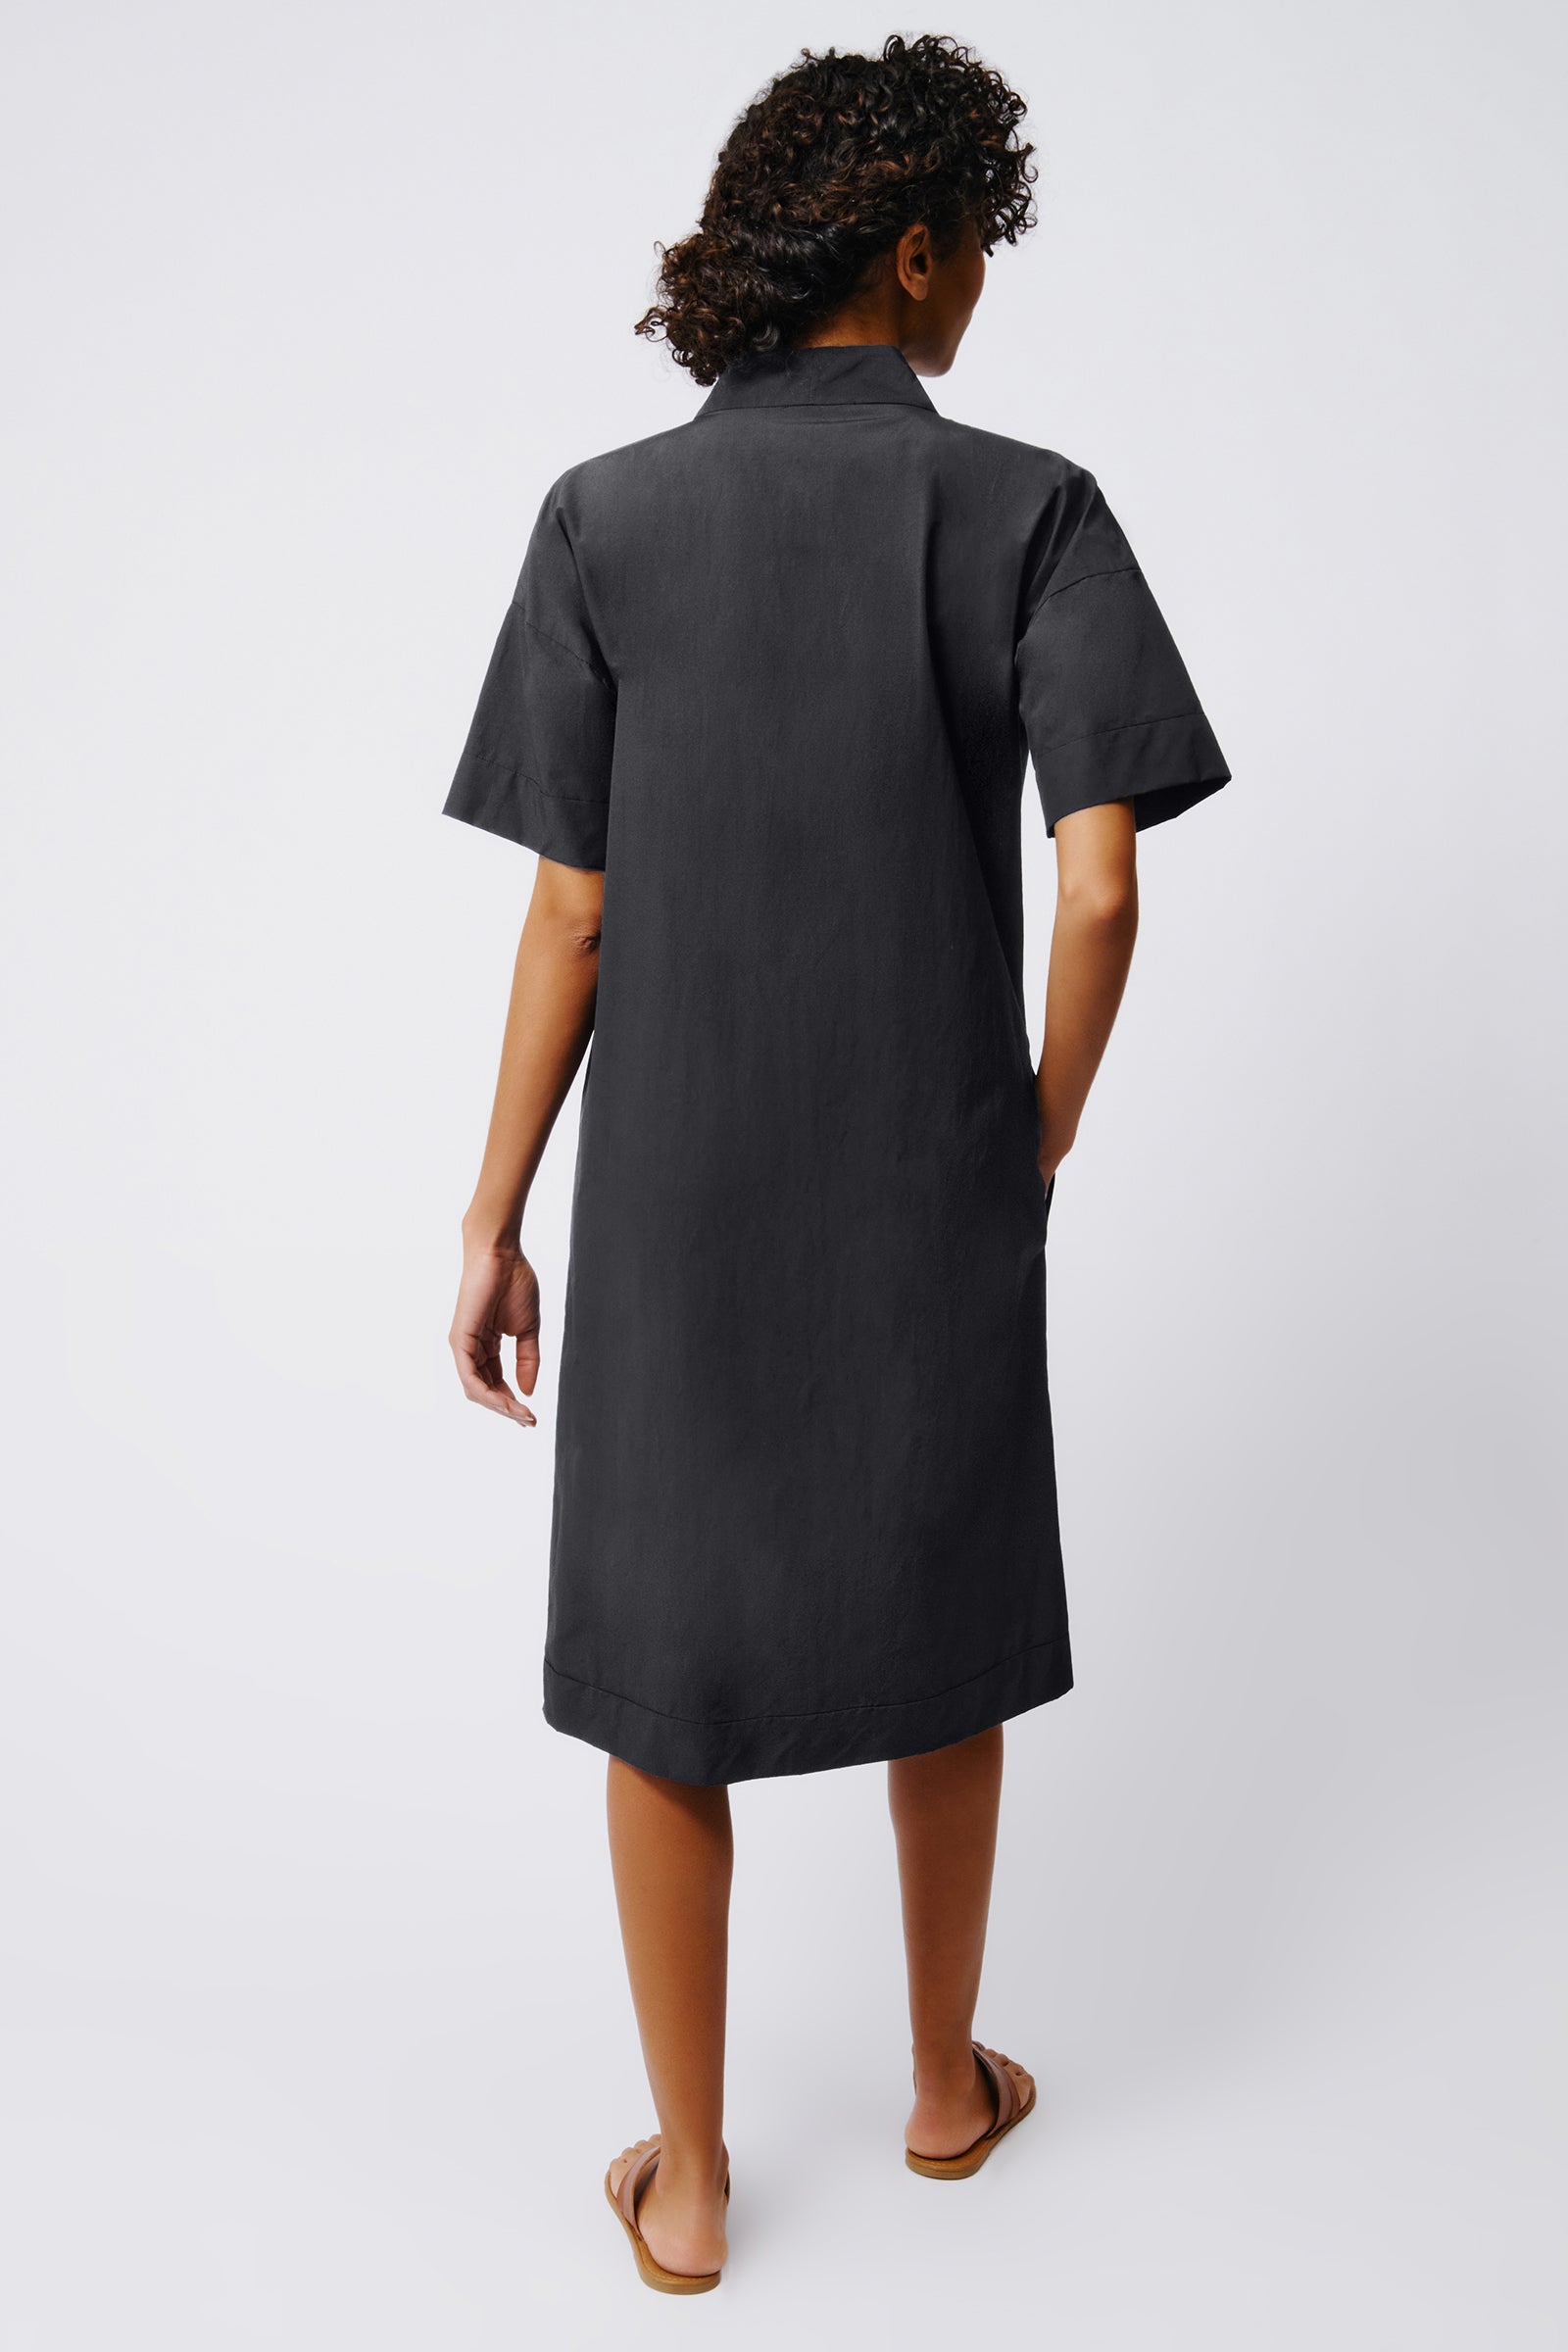 Kal Rieman Notch Placket Dress in Black on Model Full Back View